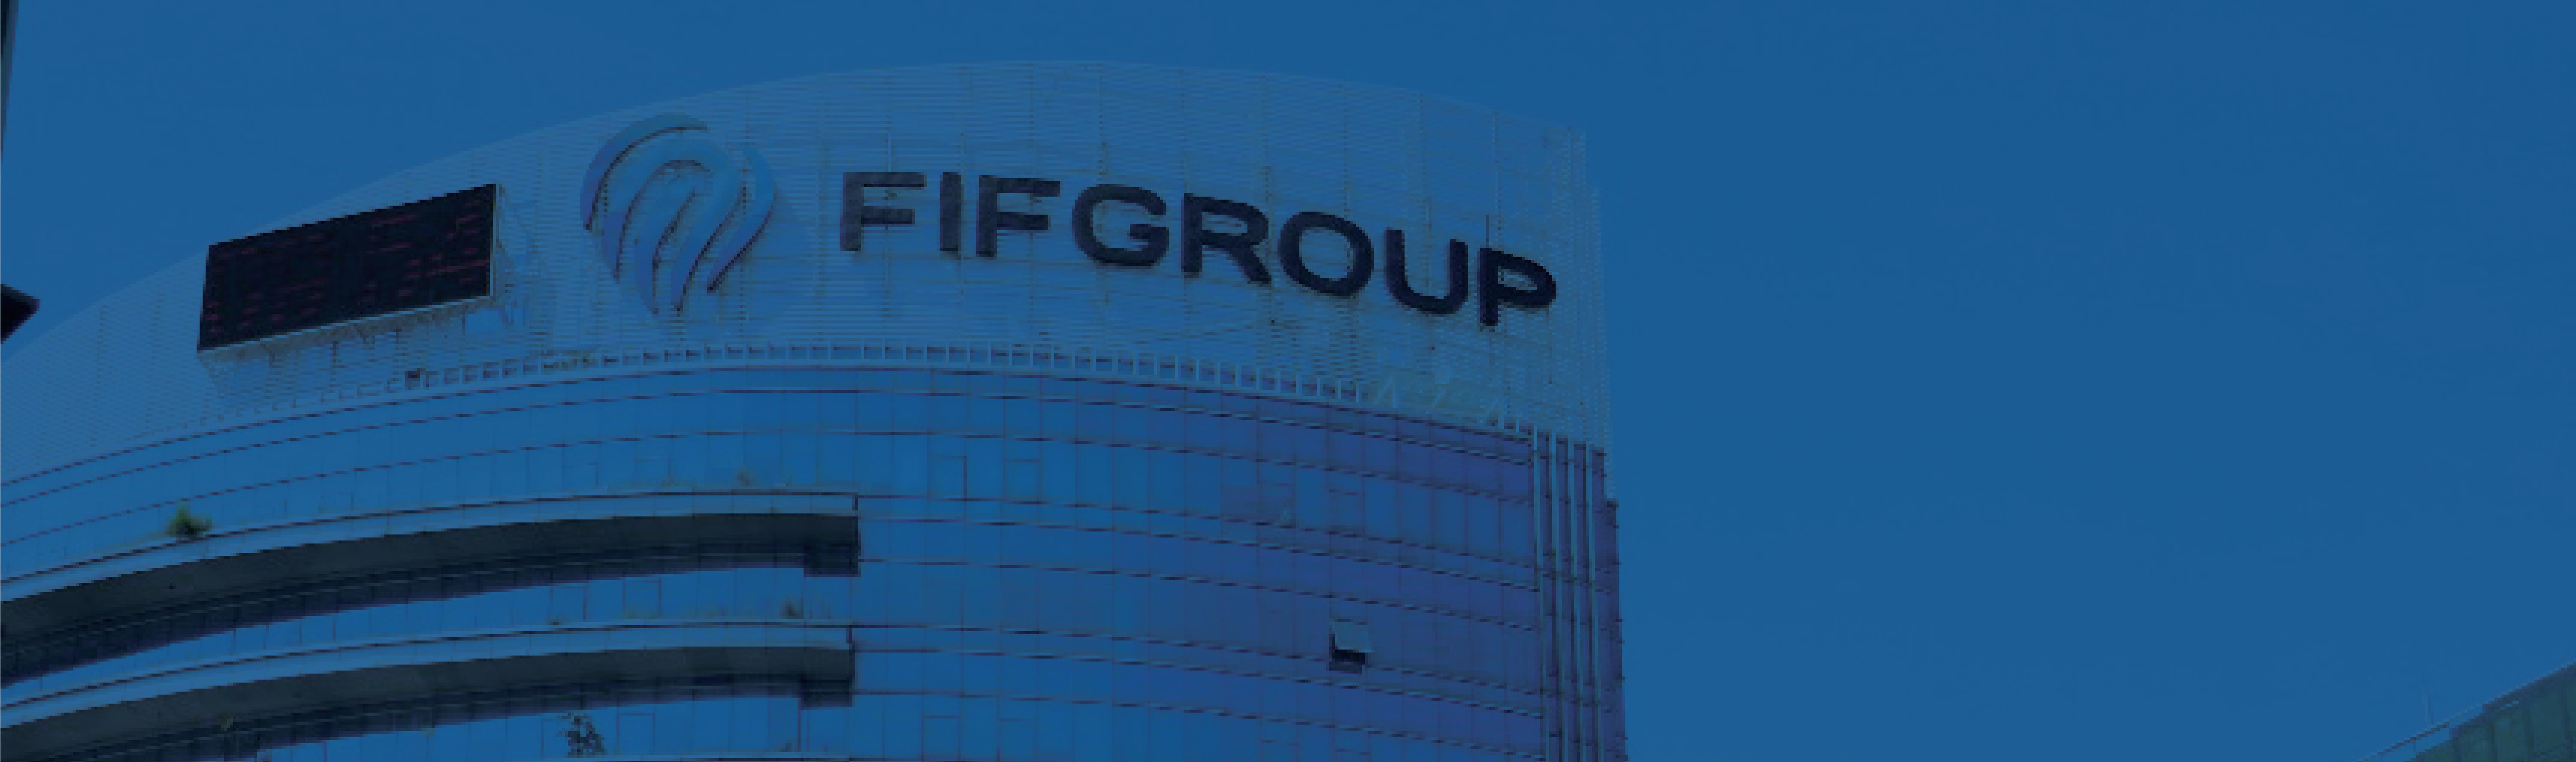 Informasi Umum Fifgroup Pt Federal International Finance